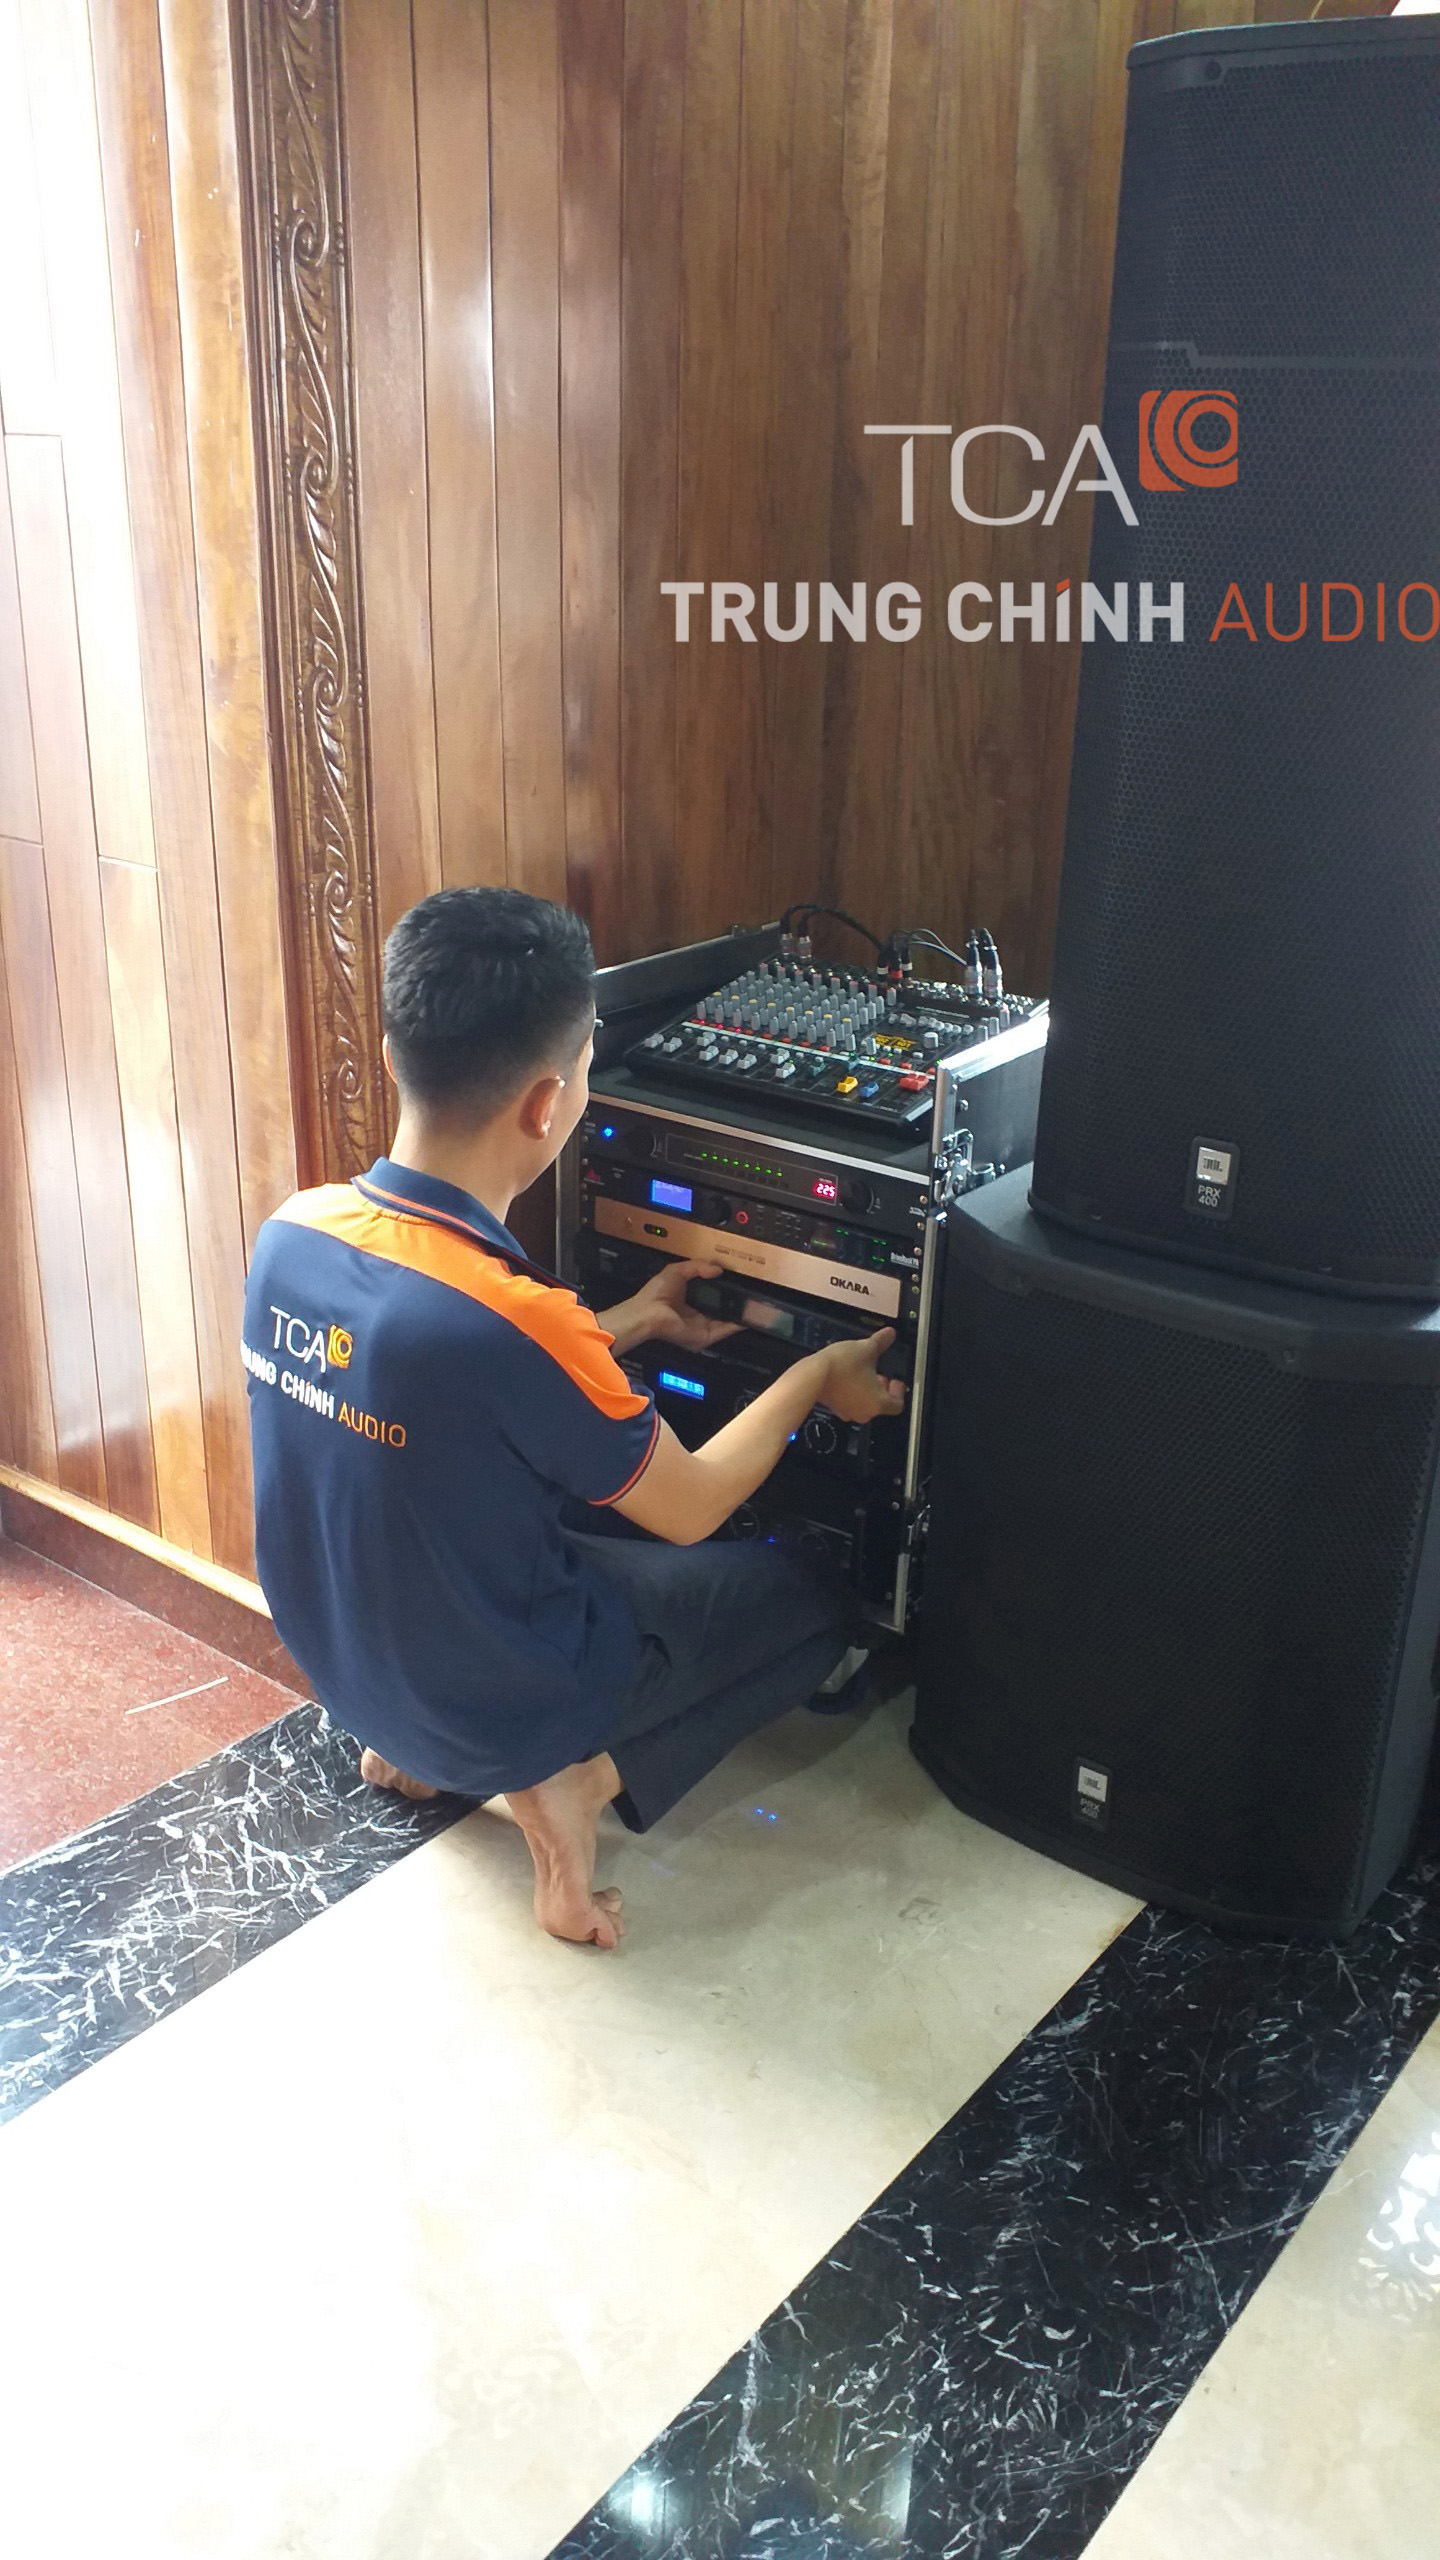 Bộ dàn karaoke JBL gia đình anh Tuấn tại Đồng Nai giá 200tr